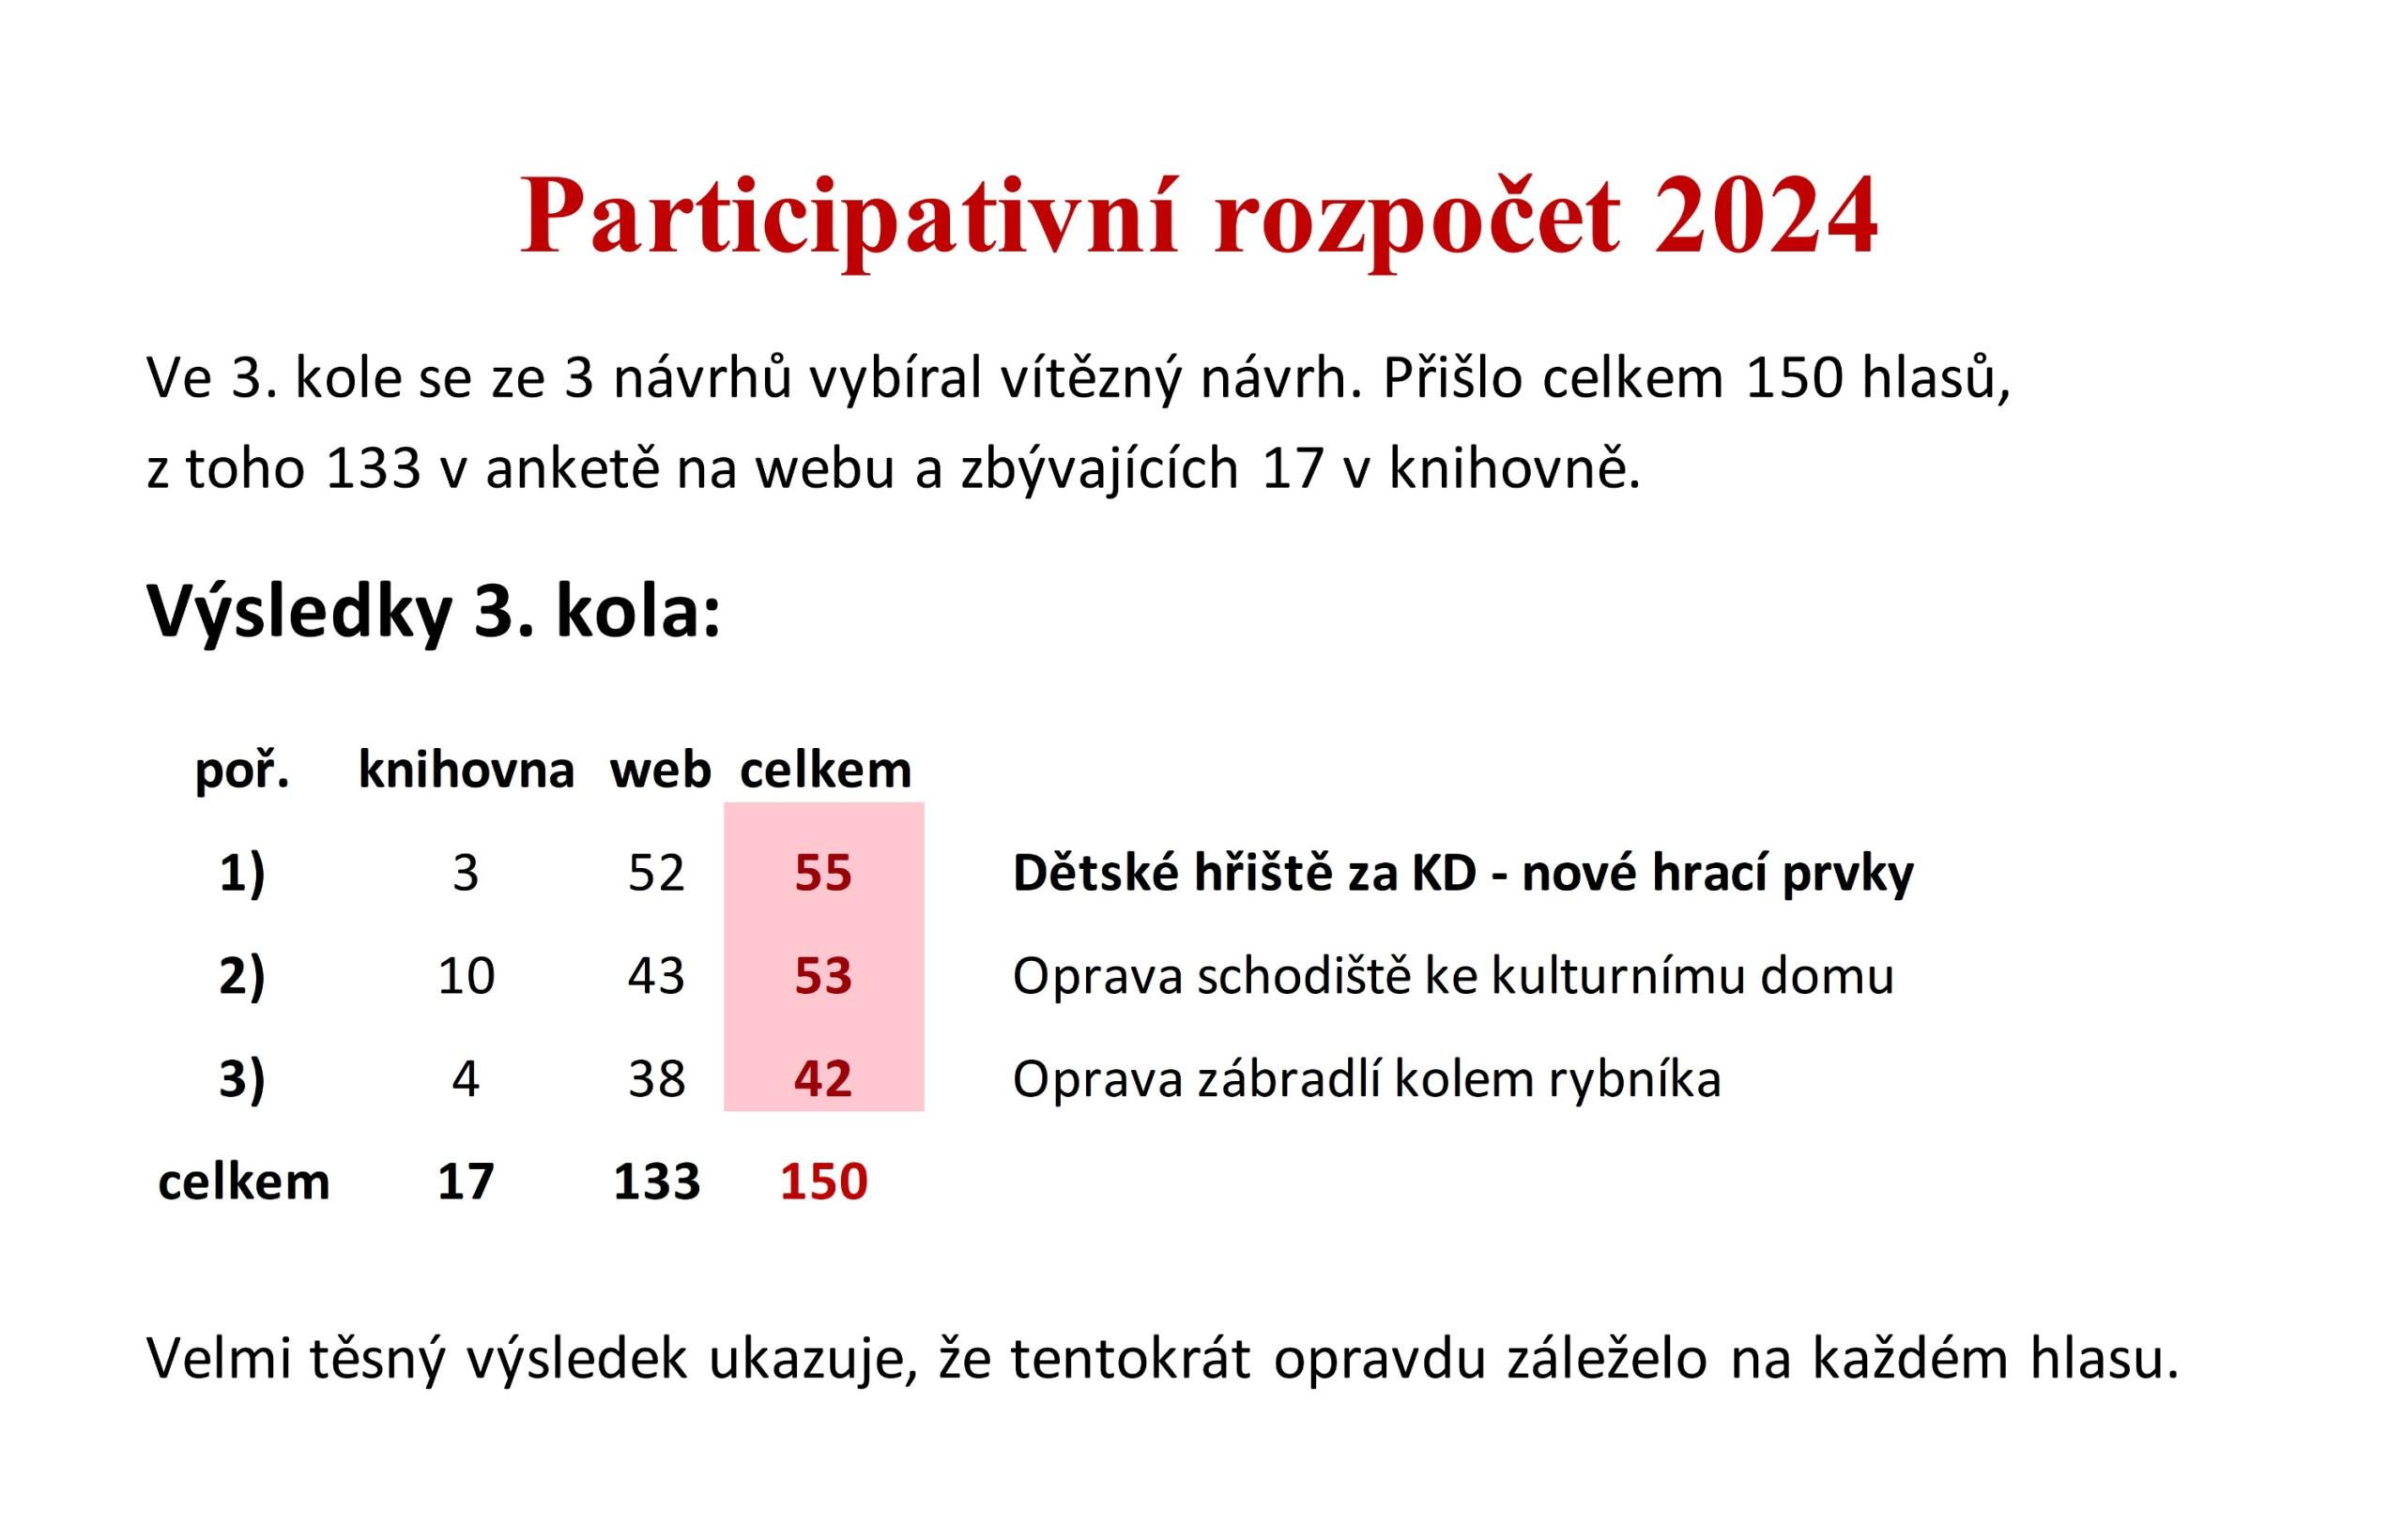 Participativní rozpočet 2024 - výsledky